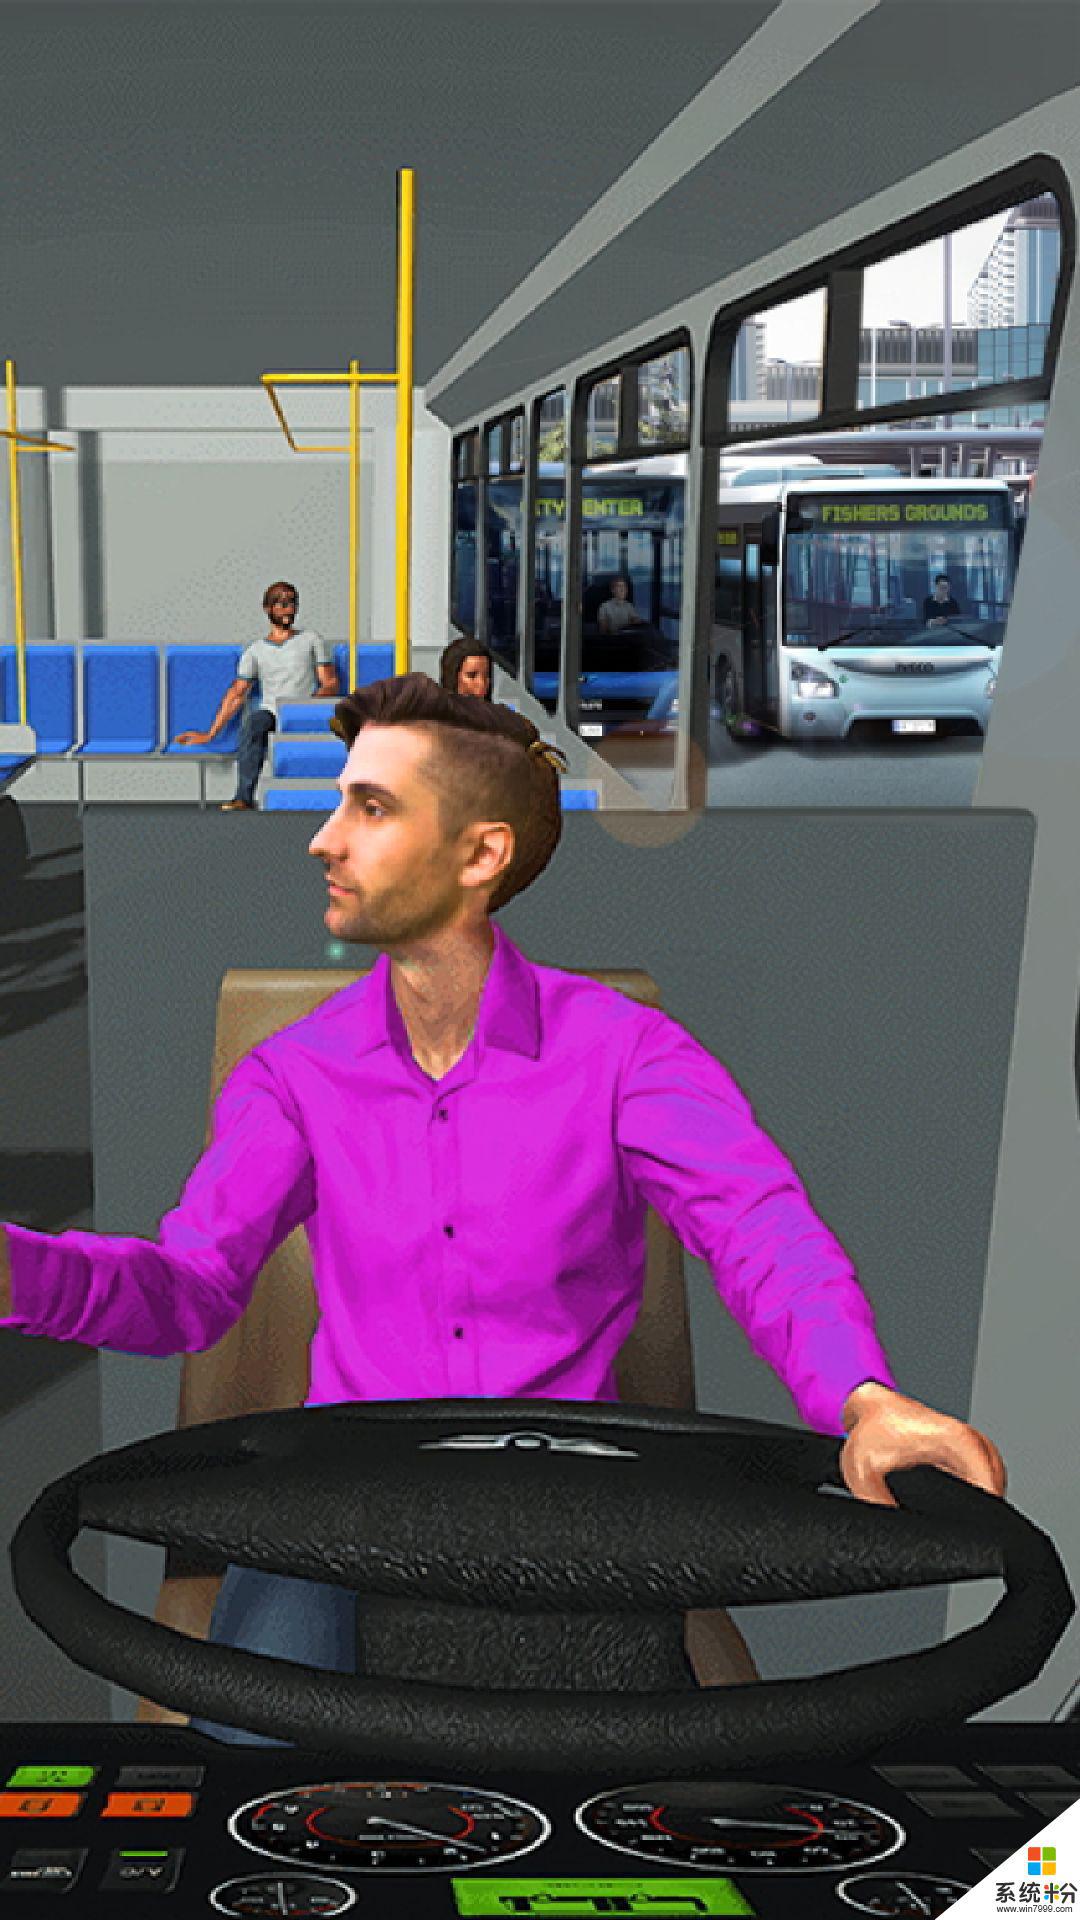 公交模拟车手机游戏有哪些_模拟公交车手游下载_公交车手机模拟游戏有哪些